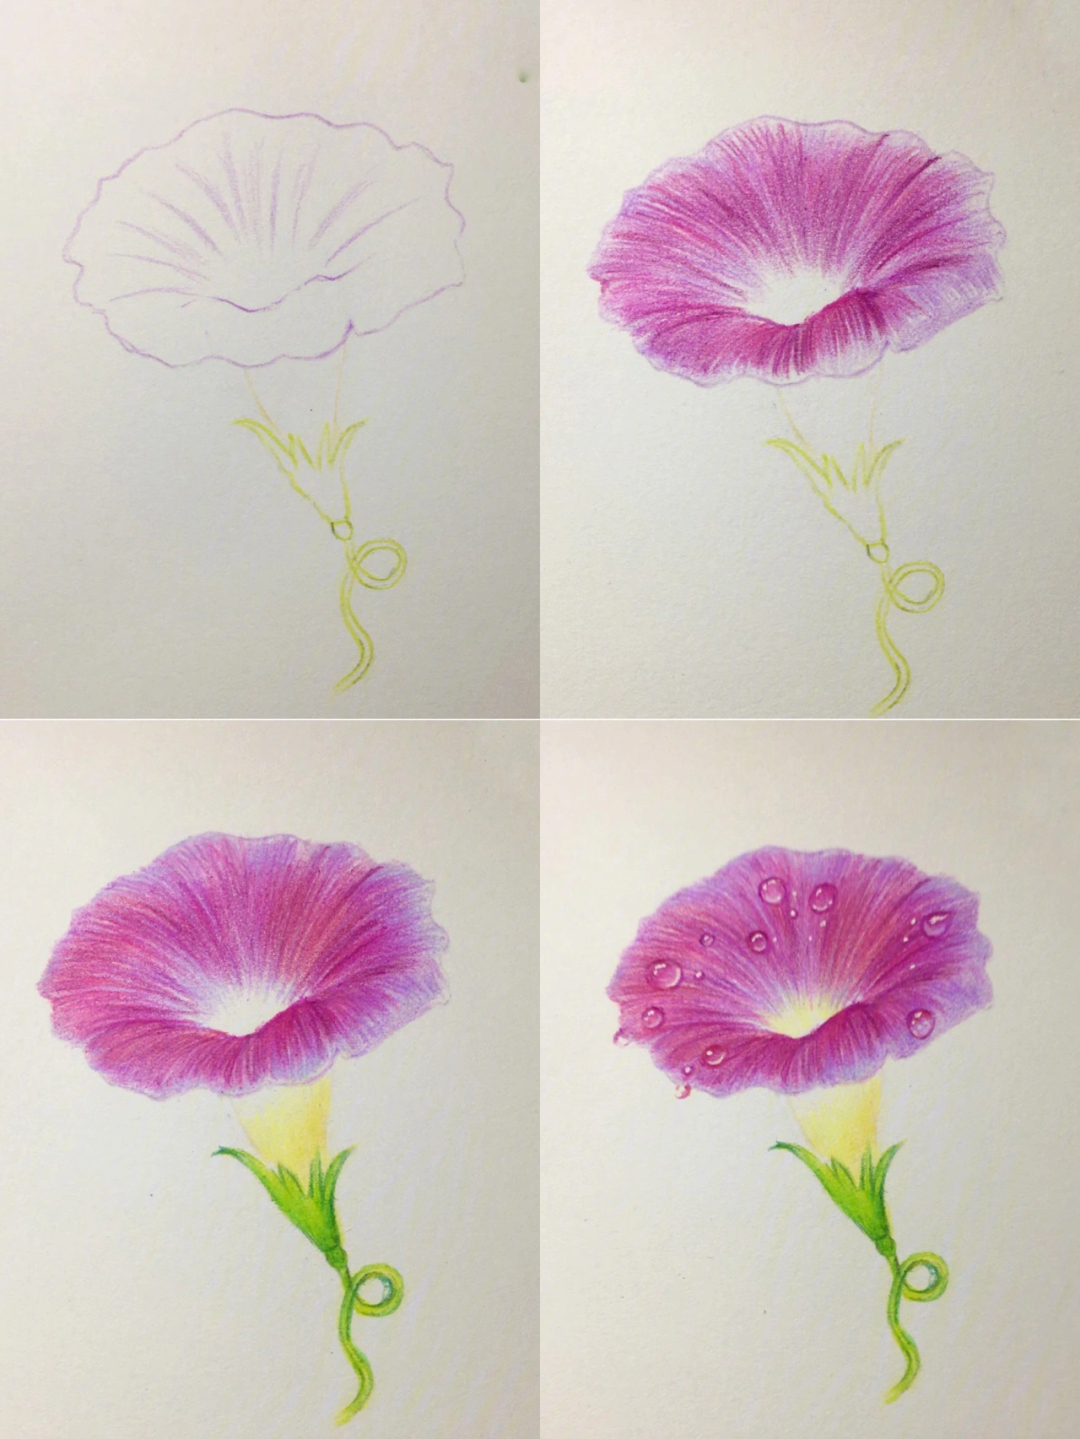 油画花朵画法简单步骤图片